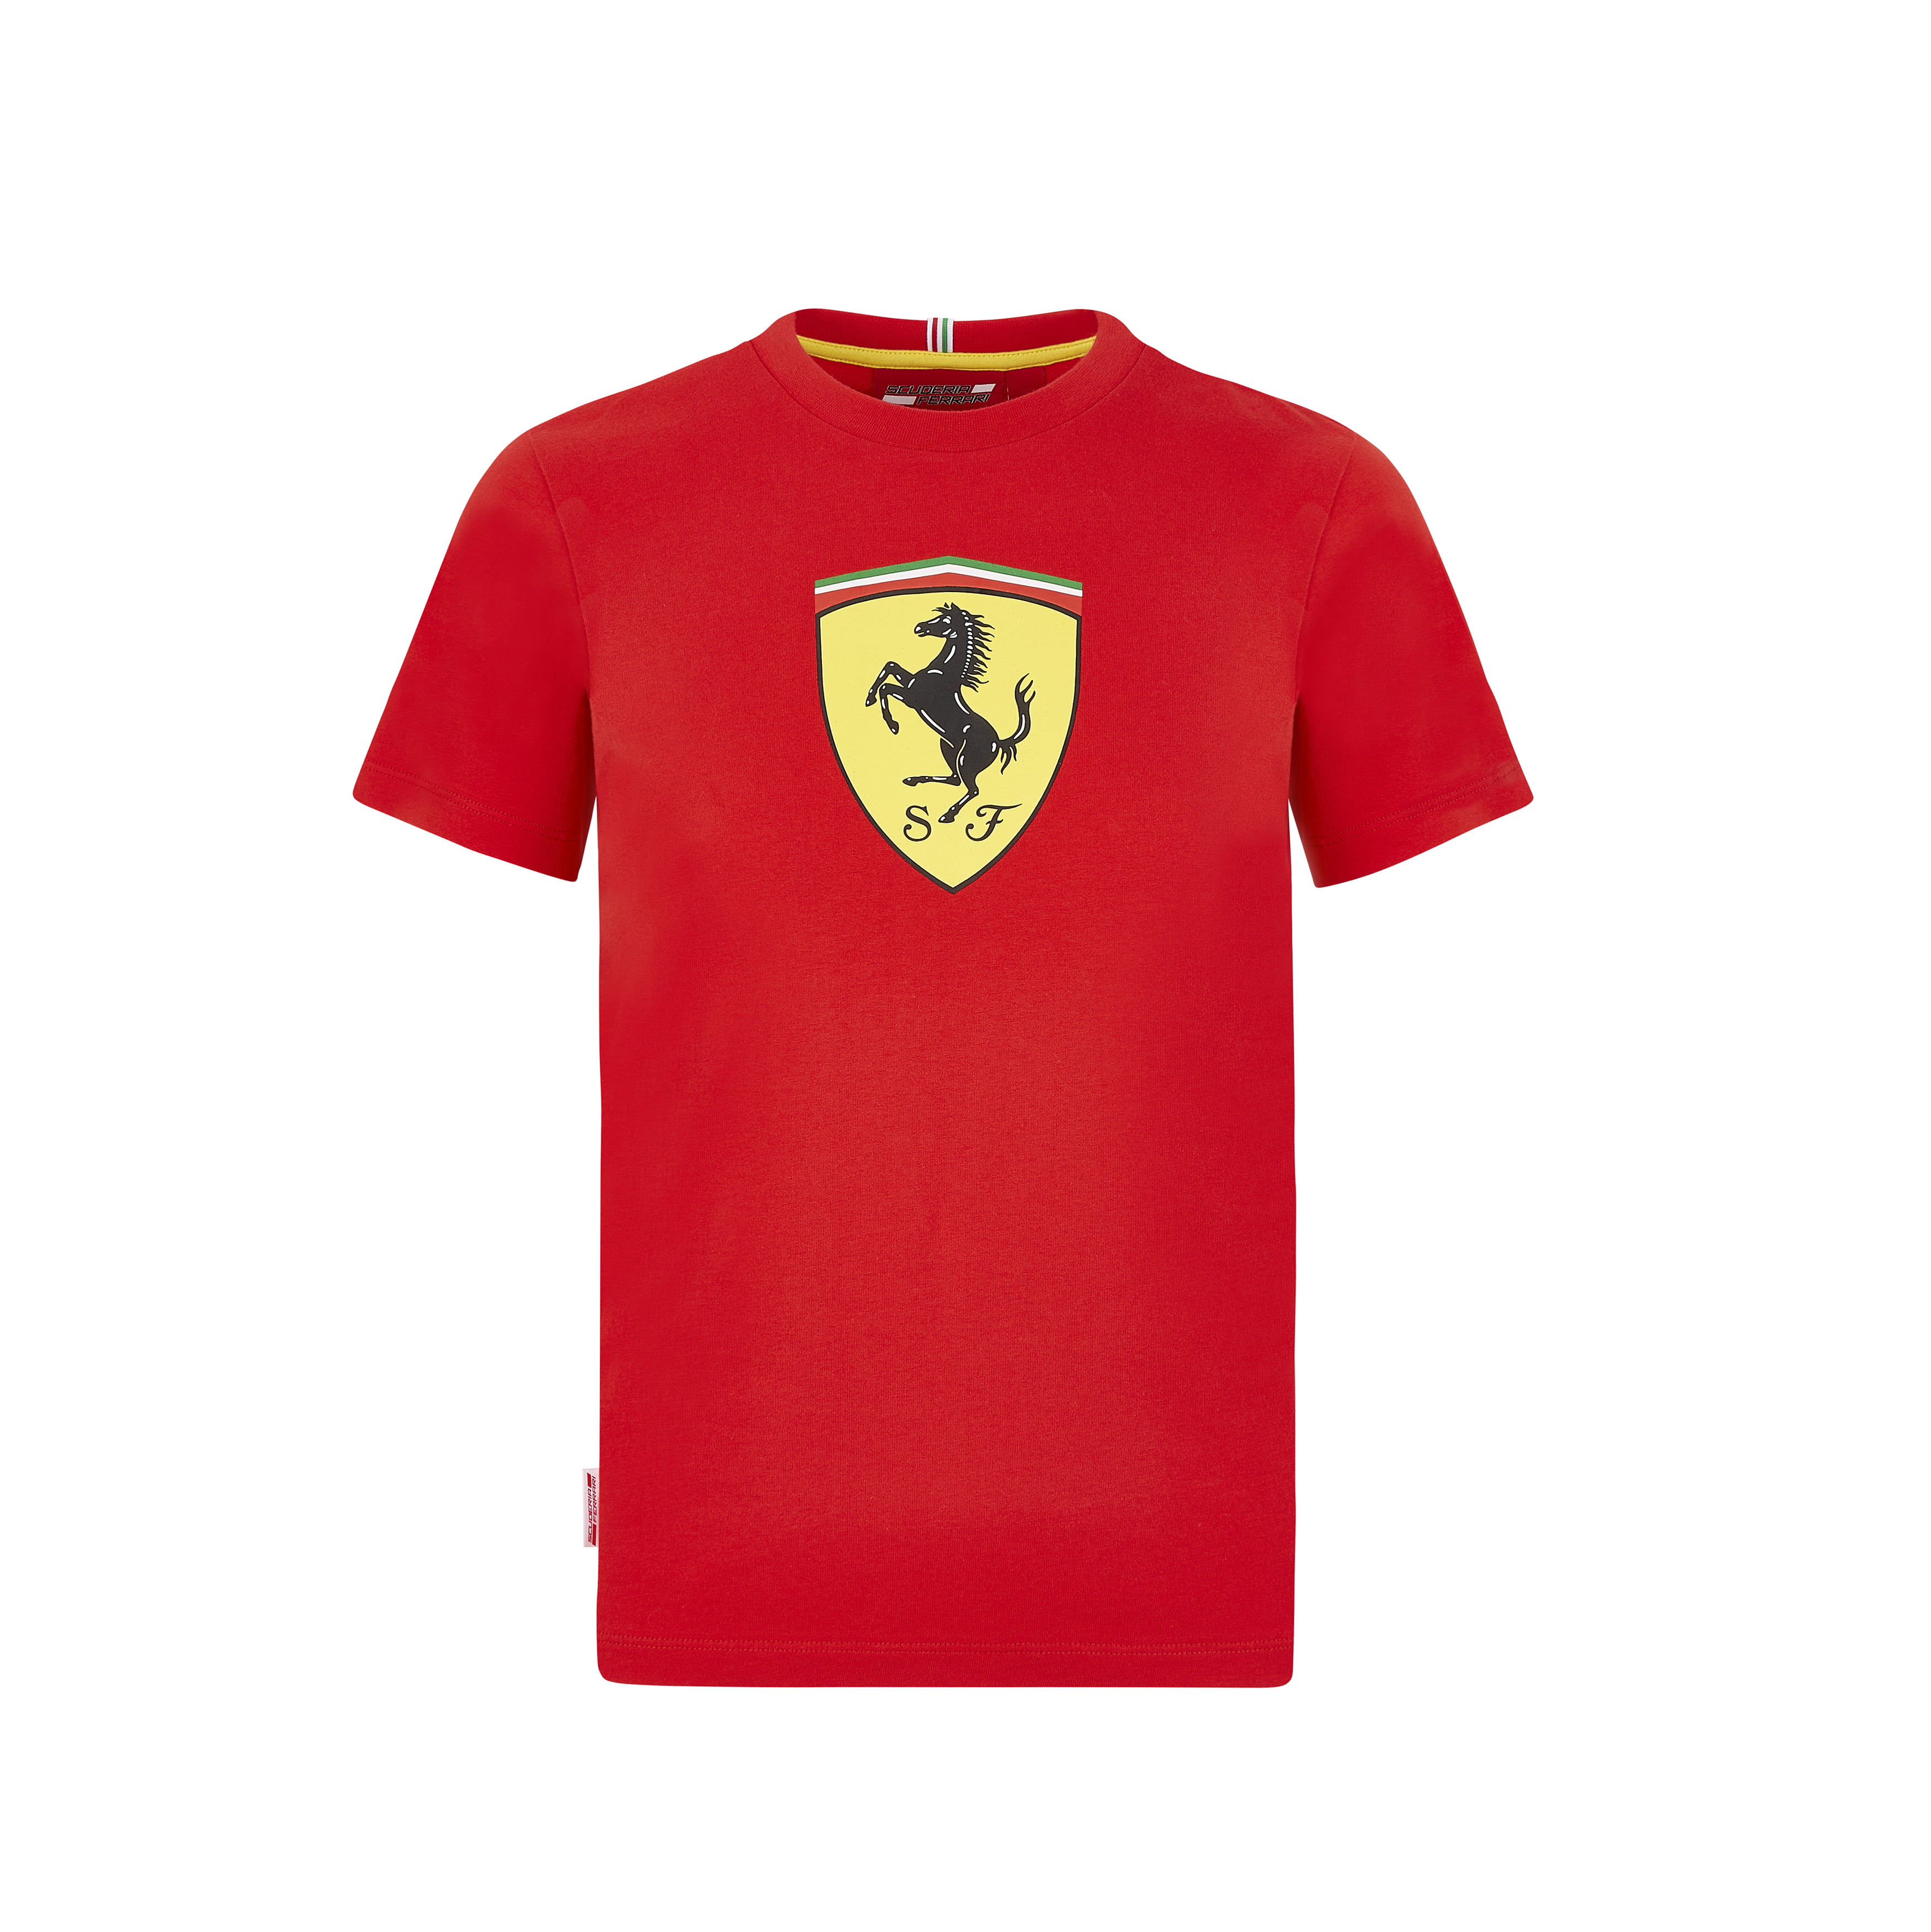 Scuderia Ferrari - Scuderia Ferrari F1 Kids Large Shield T-Shirt Black ...